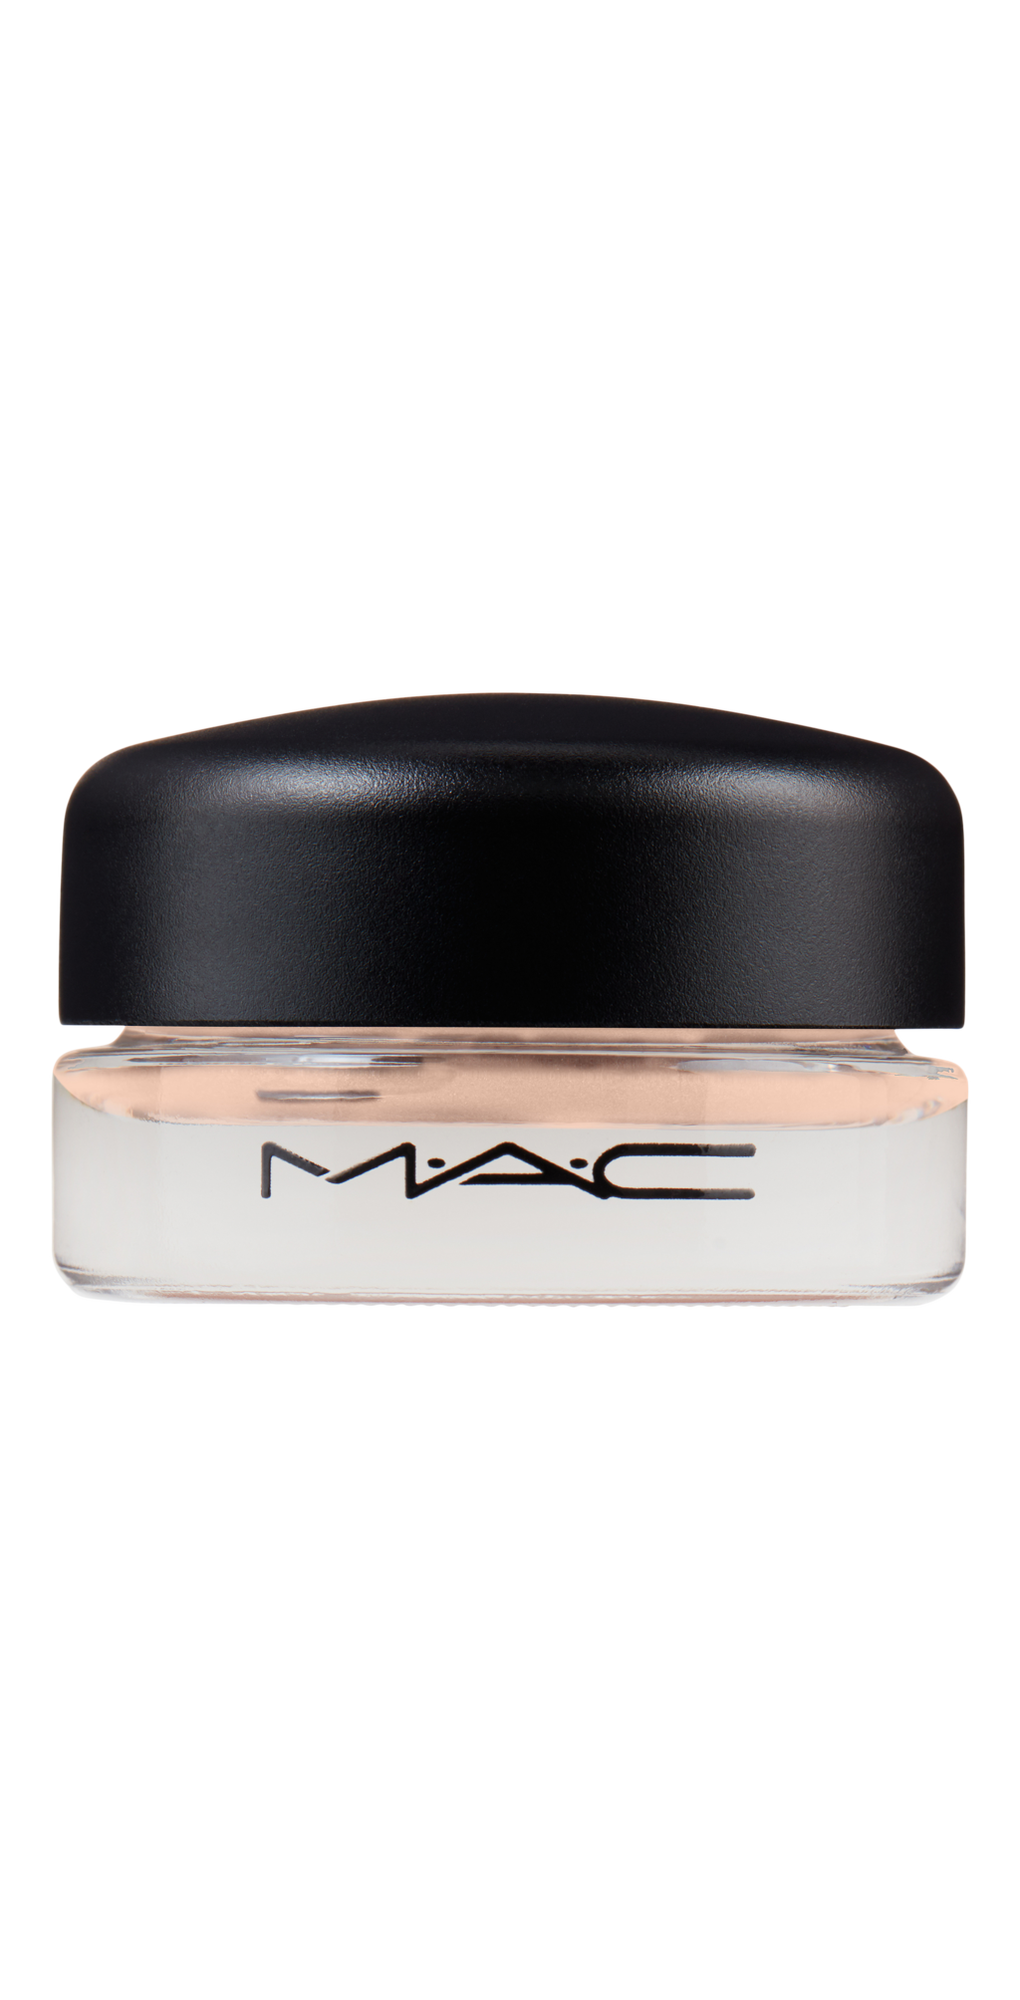 Pro Longwear Paint Pot Eyeshadow - MAC